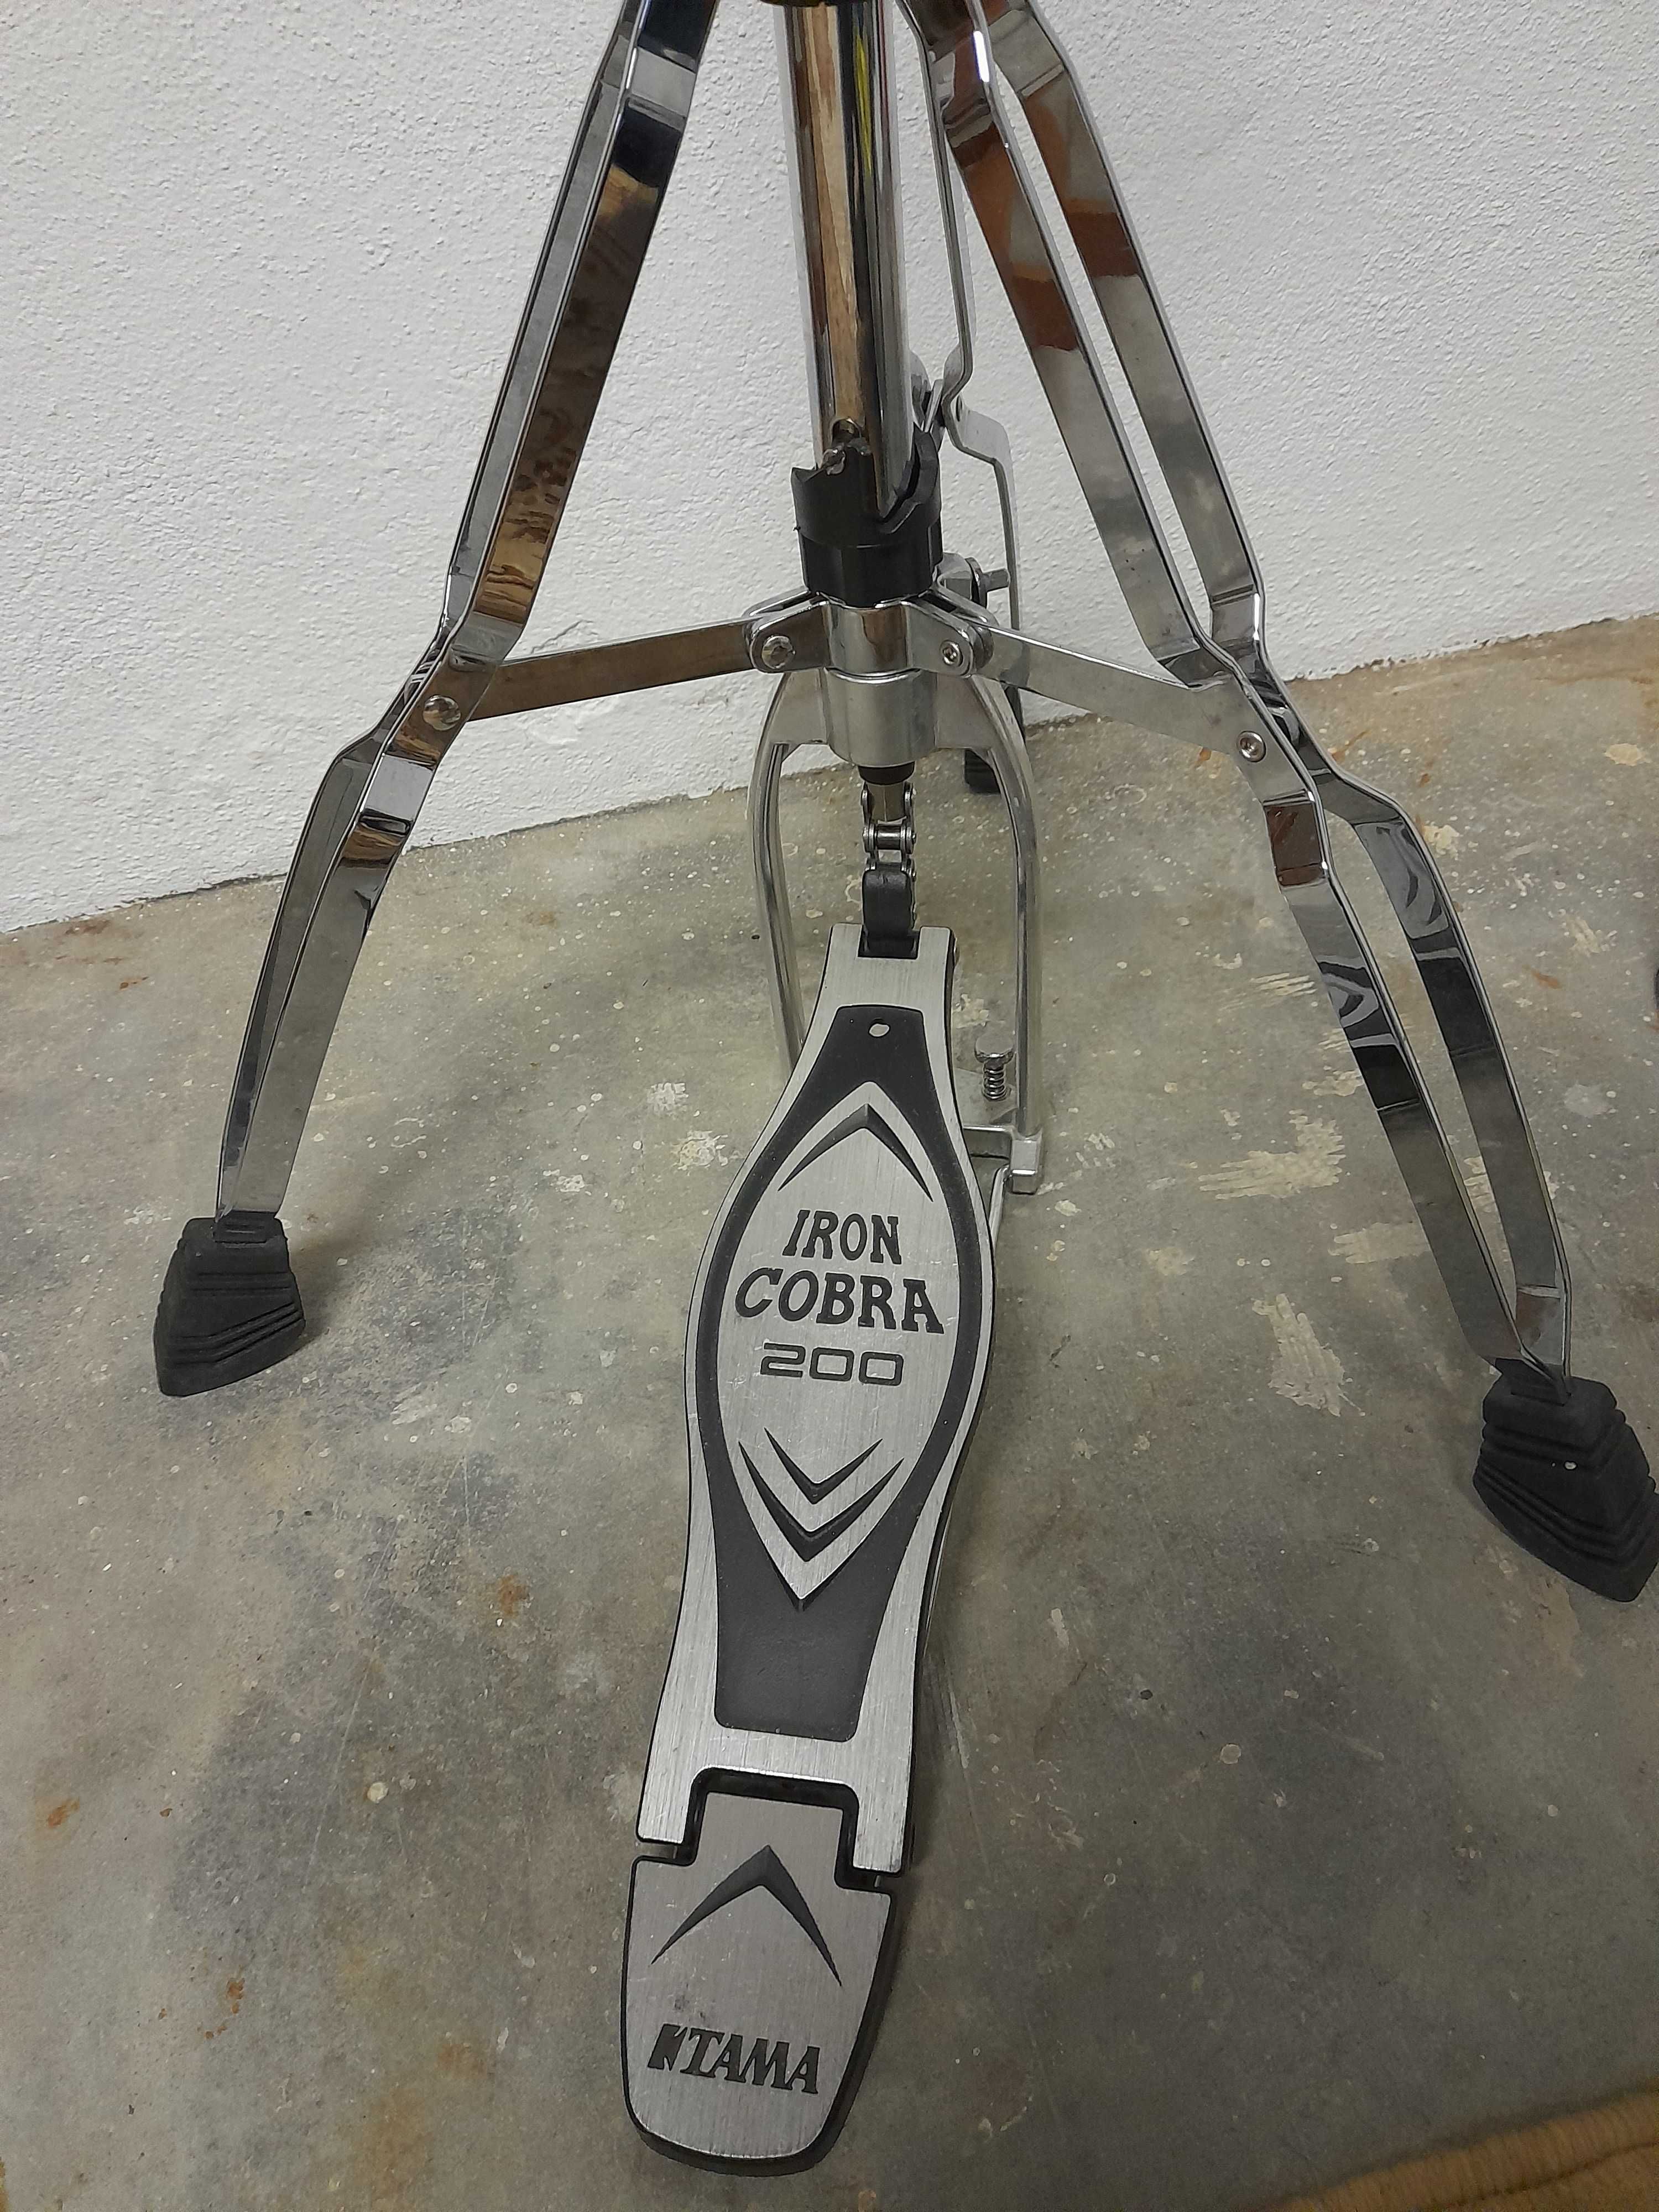 Suporte hi hats IRON COBRA 200 e pedal bombo IRON COBRA 200.